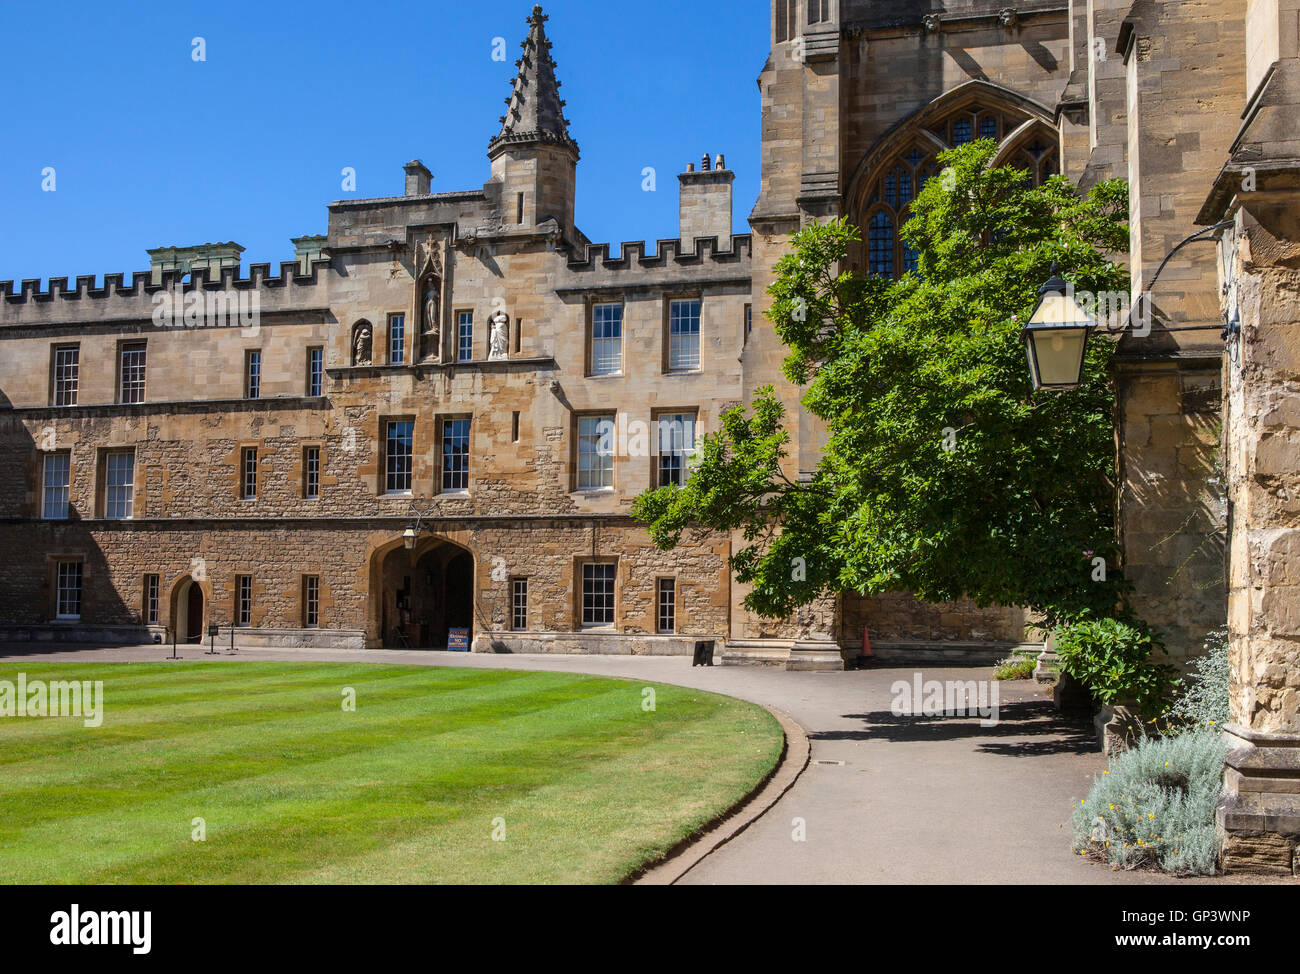 Une vue à l'intérieur d'une cour au New College à Oxford, Angleterre. Il est l'un des collèges de l'Université d'Oxford, Royaume-Uni. Banque D'Images